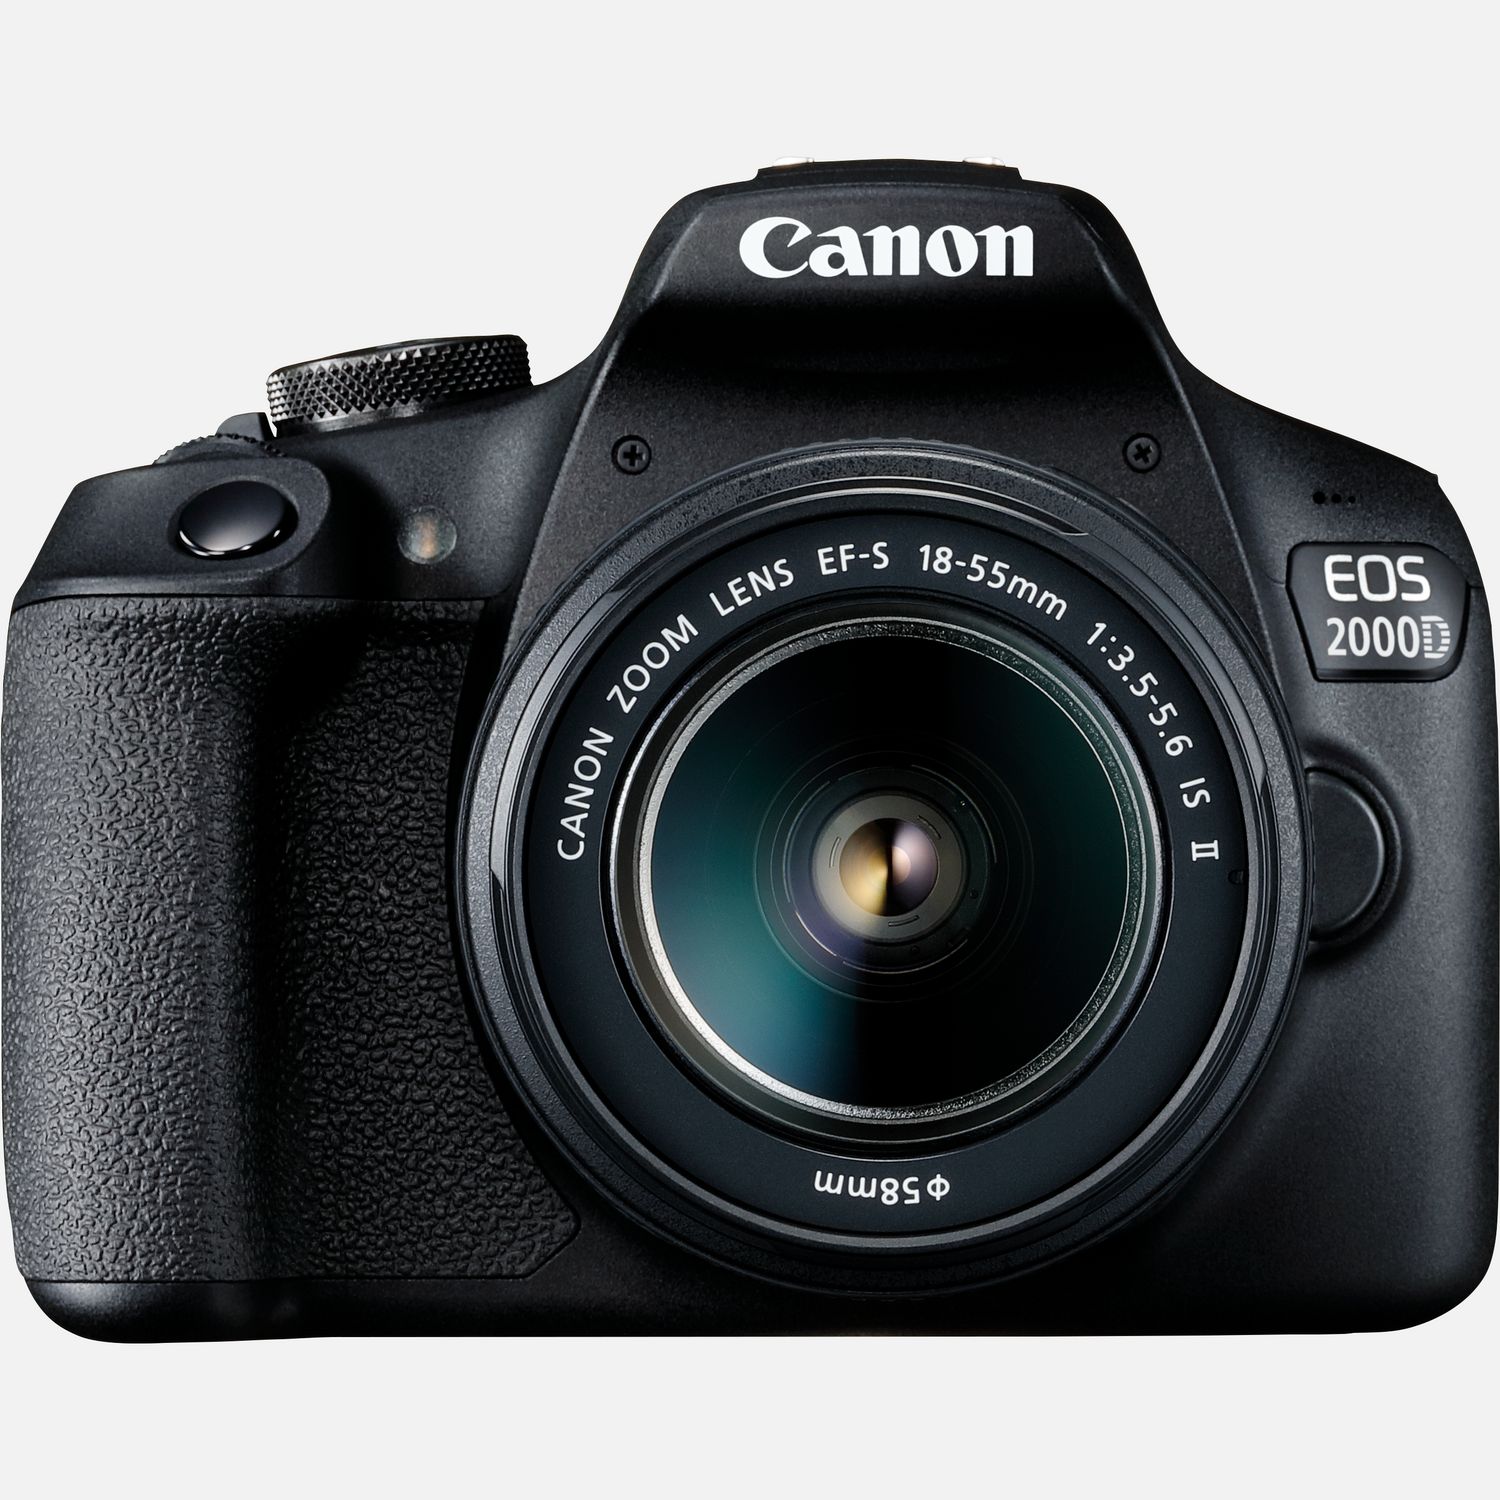 Image of Fotocamera Canon EOS 2000D + Obiettivo EF-S 18-55mm IS II